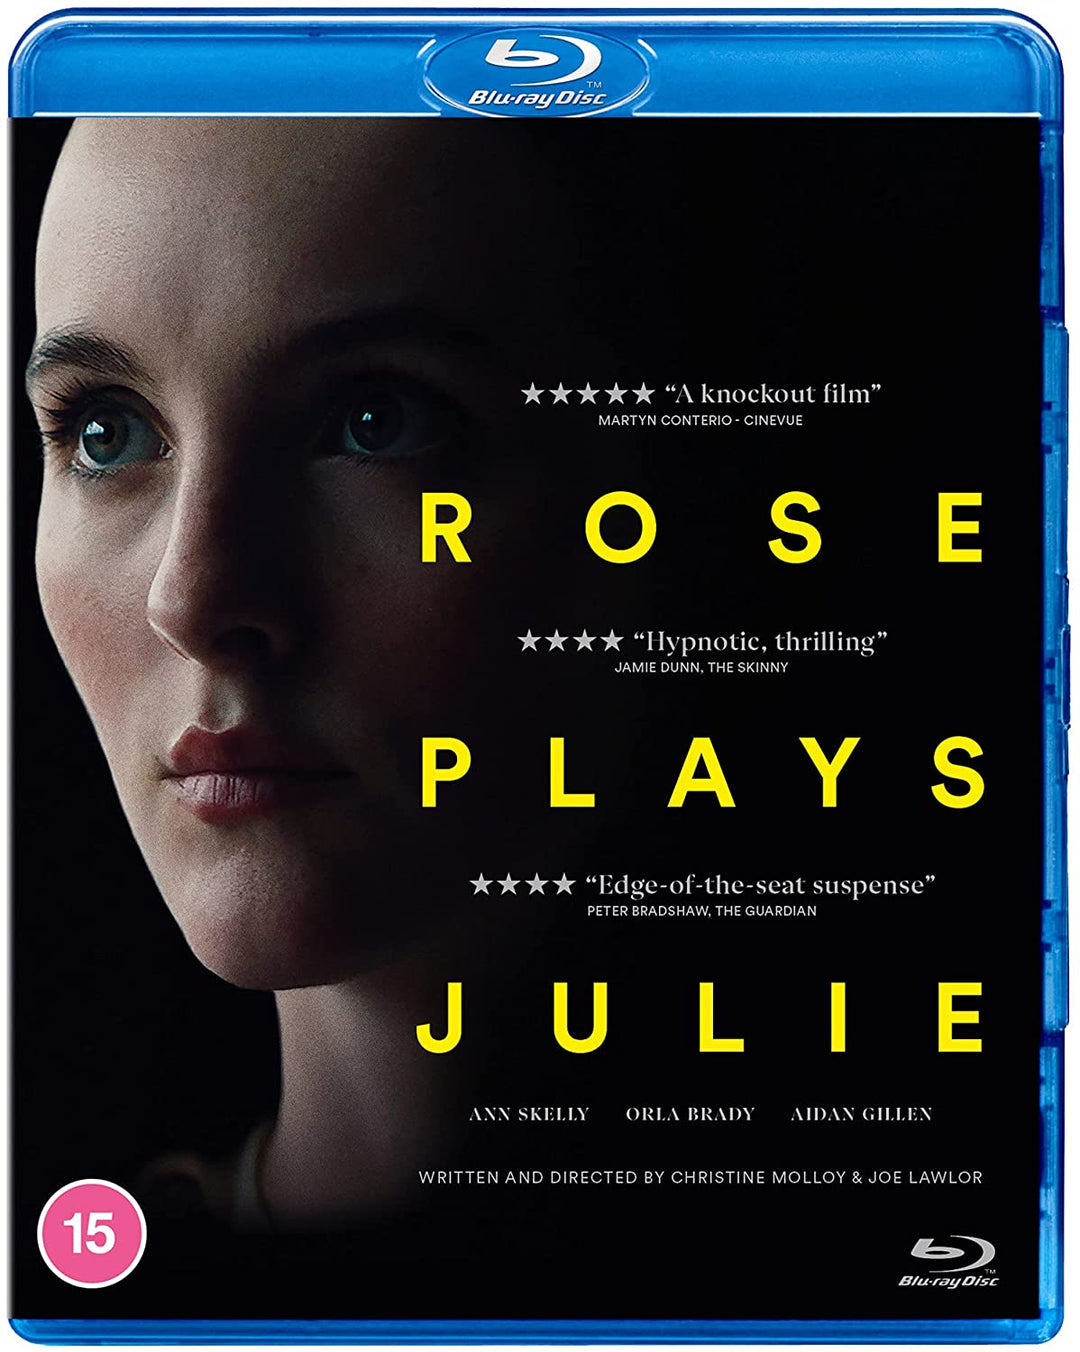 Rose plays Julie -  Drama/Thriller [Blu-ray]